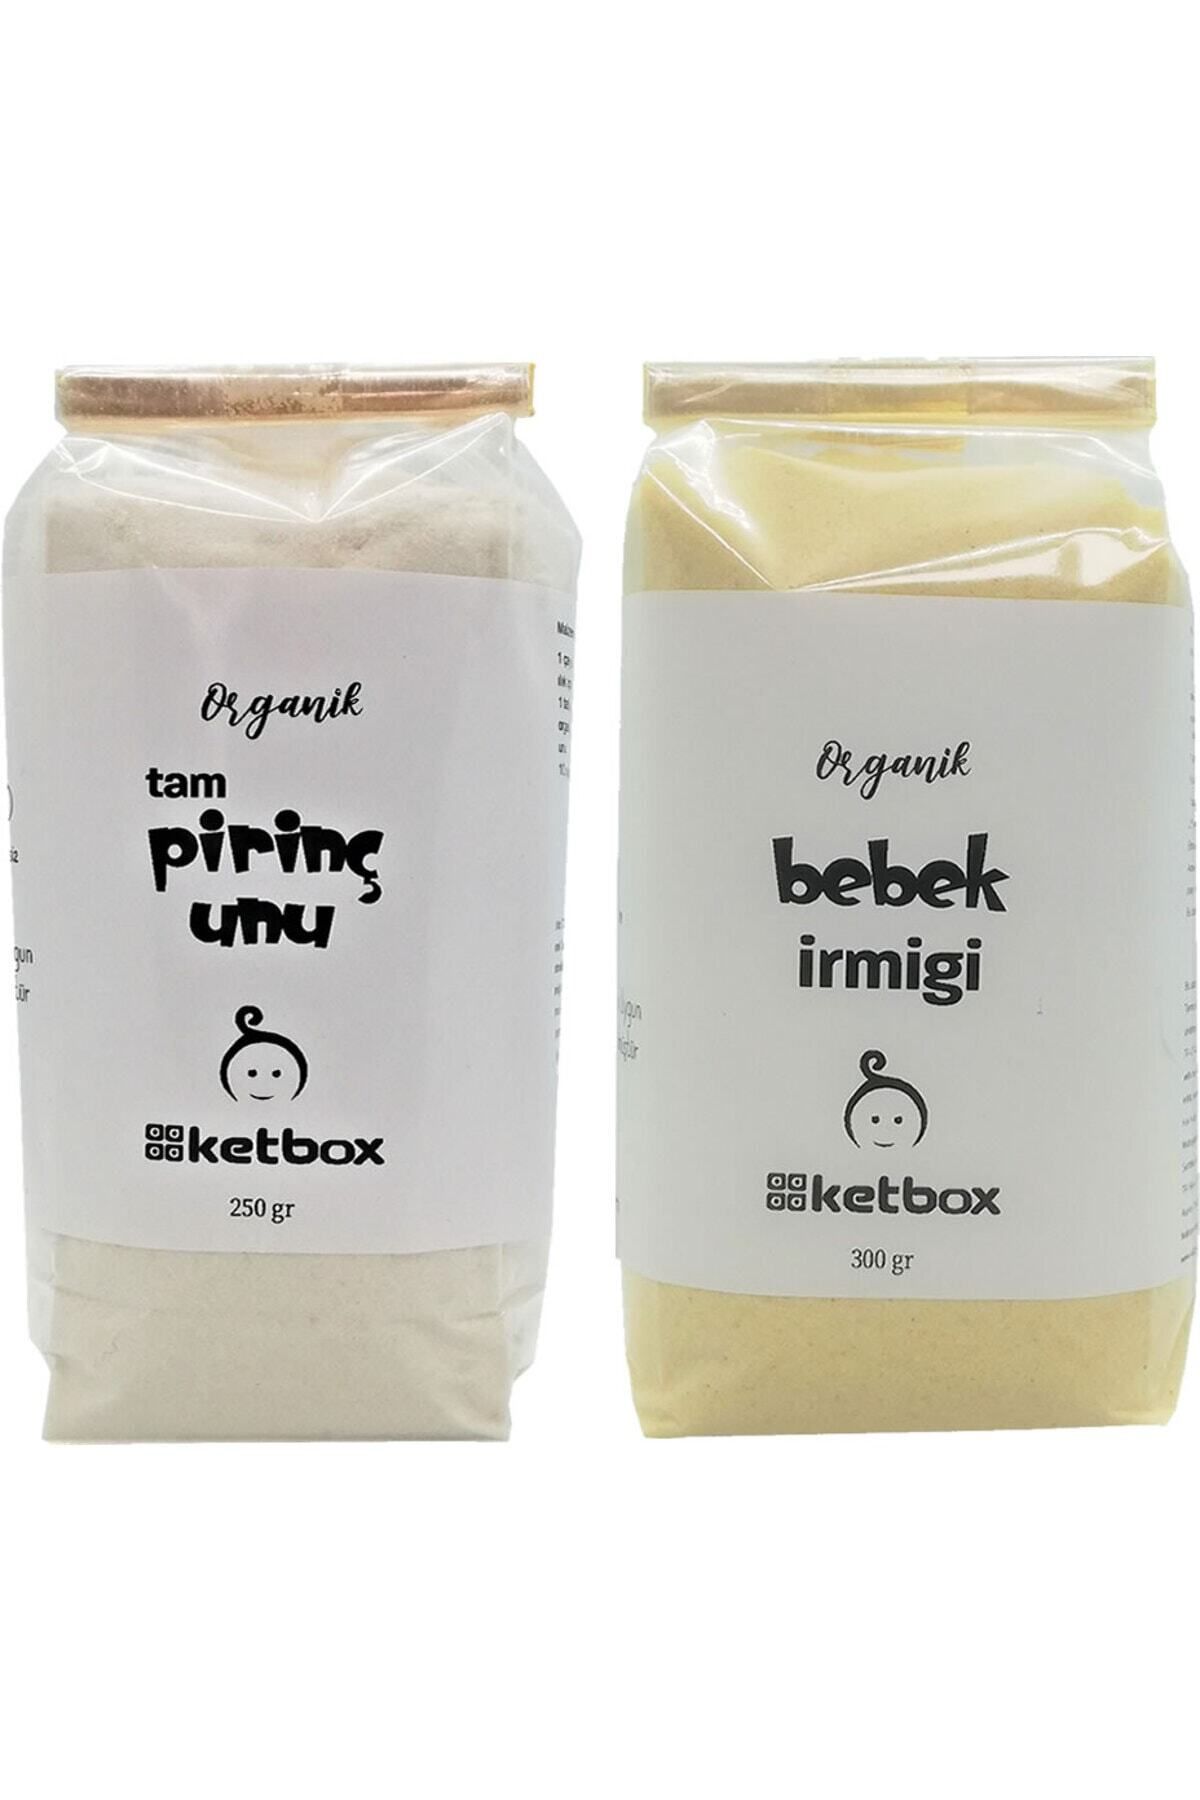 ketbox Organik Sertifikalı Bebek Irmiği Ve Tam Pirinç Unu Ek Gıda Seti + 6 Ay